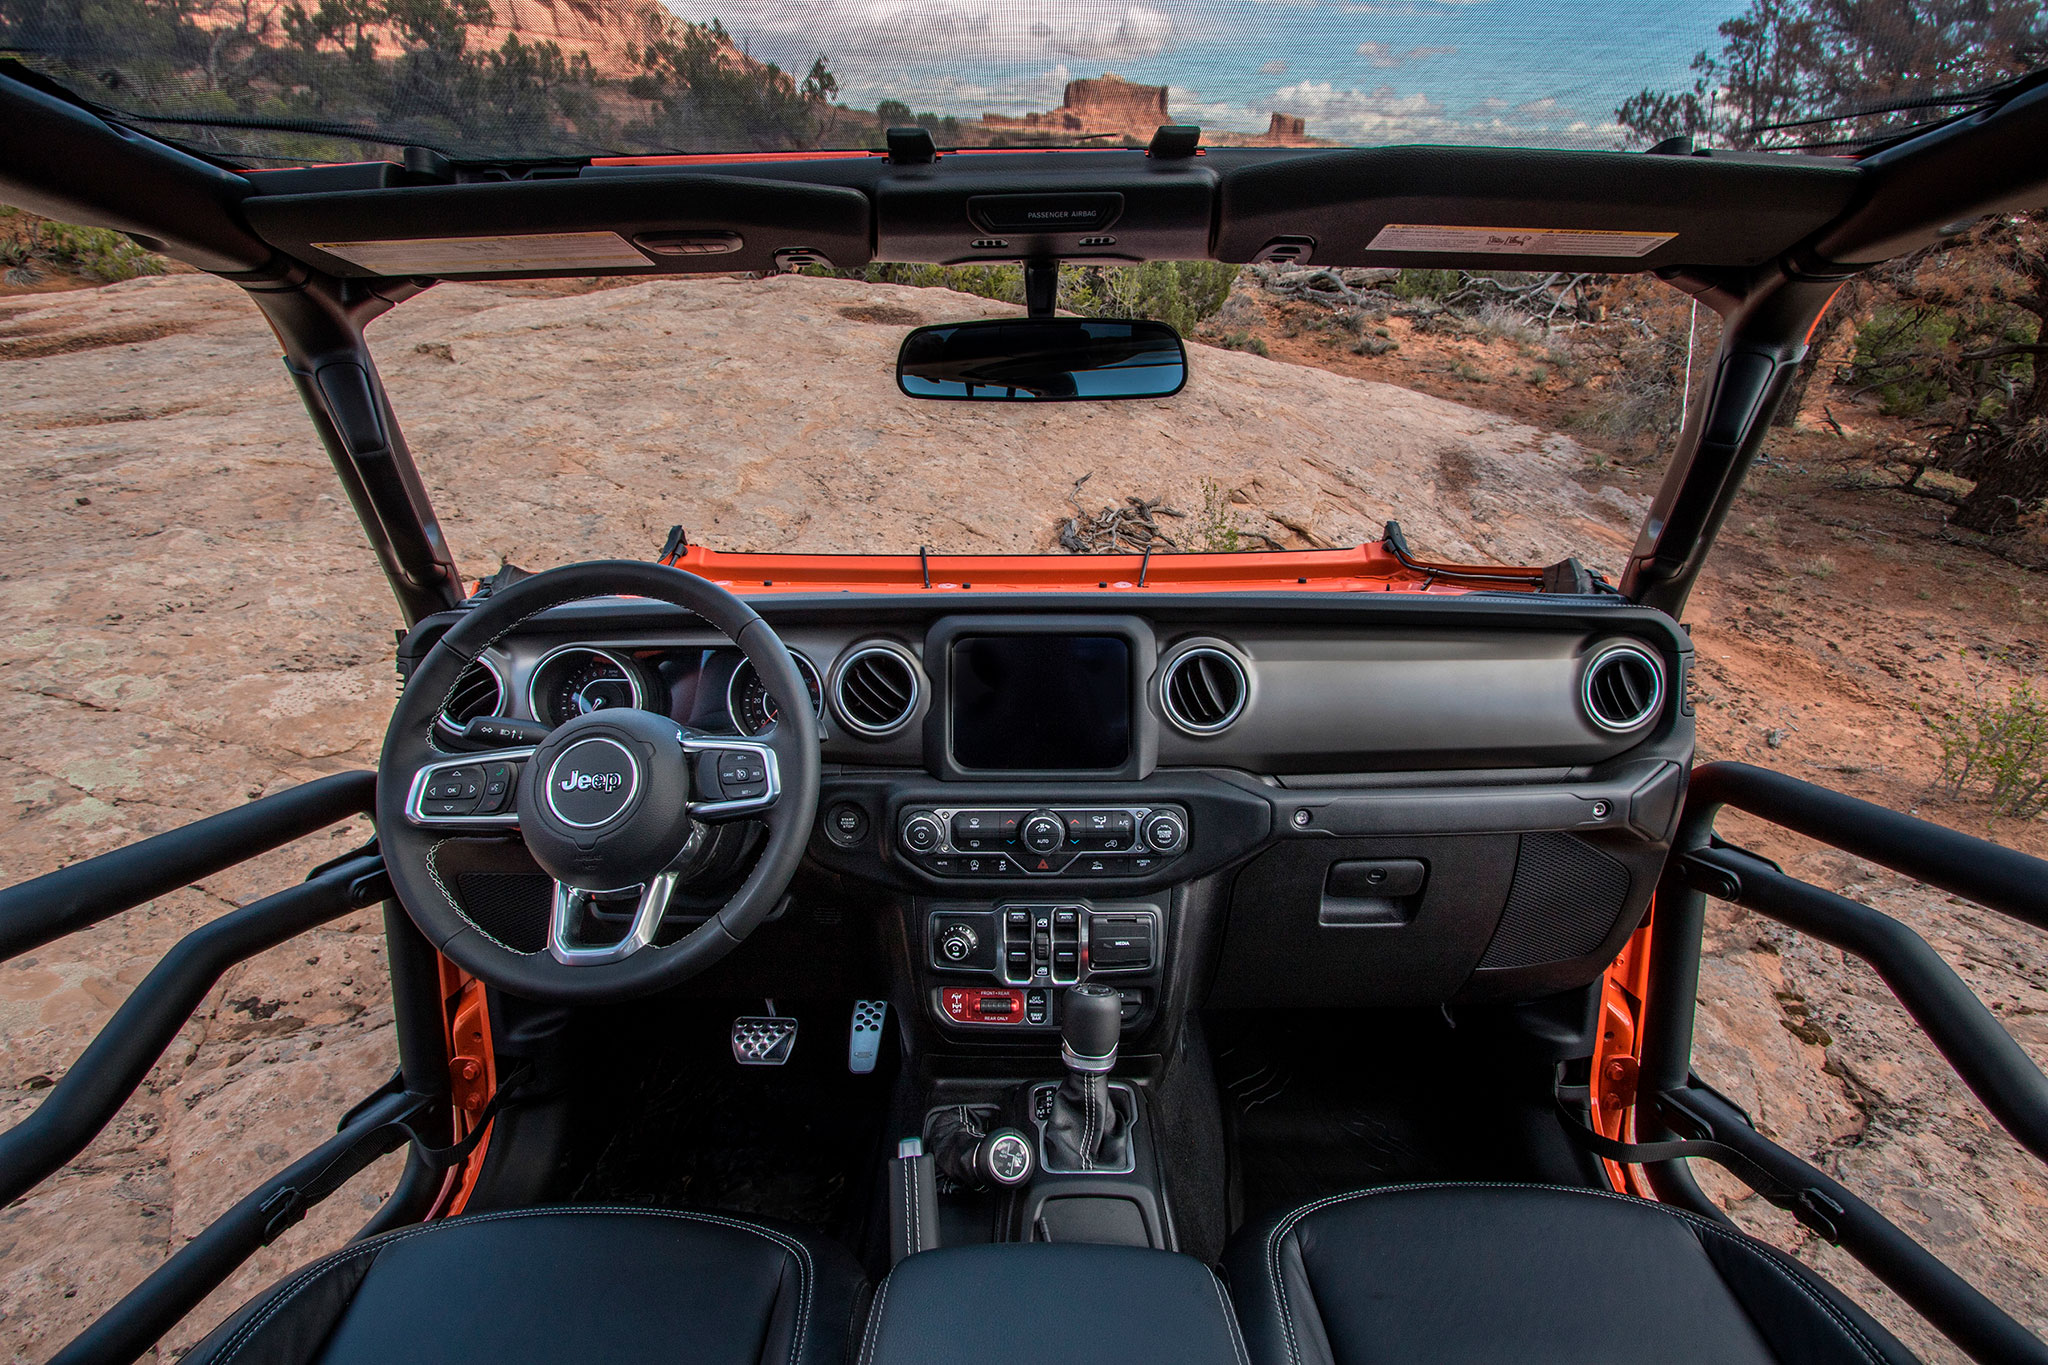 2019 Jeep Gladiator Gravity vue à 180° pour profiter pleinement du paysage - Moab Easter Jeep Safari.